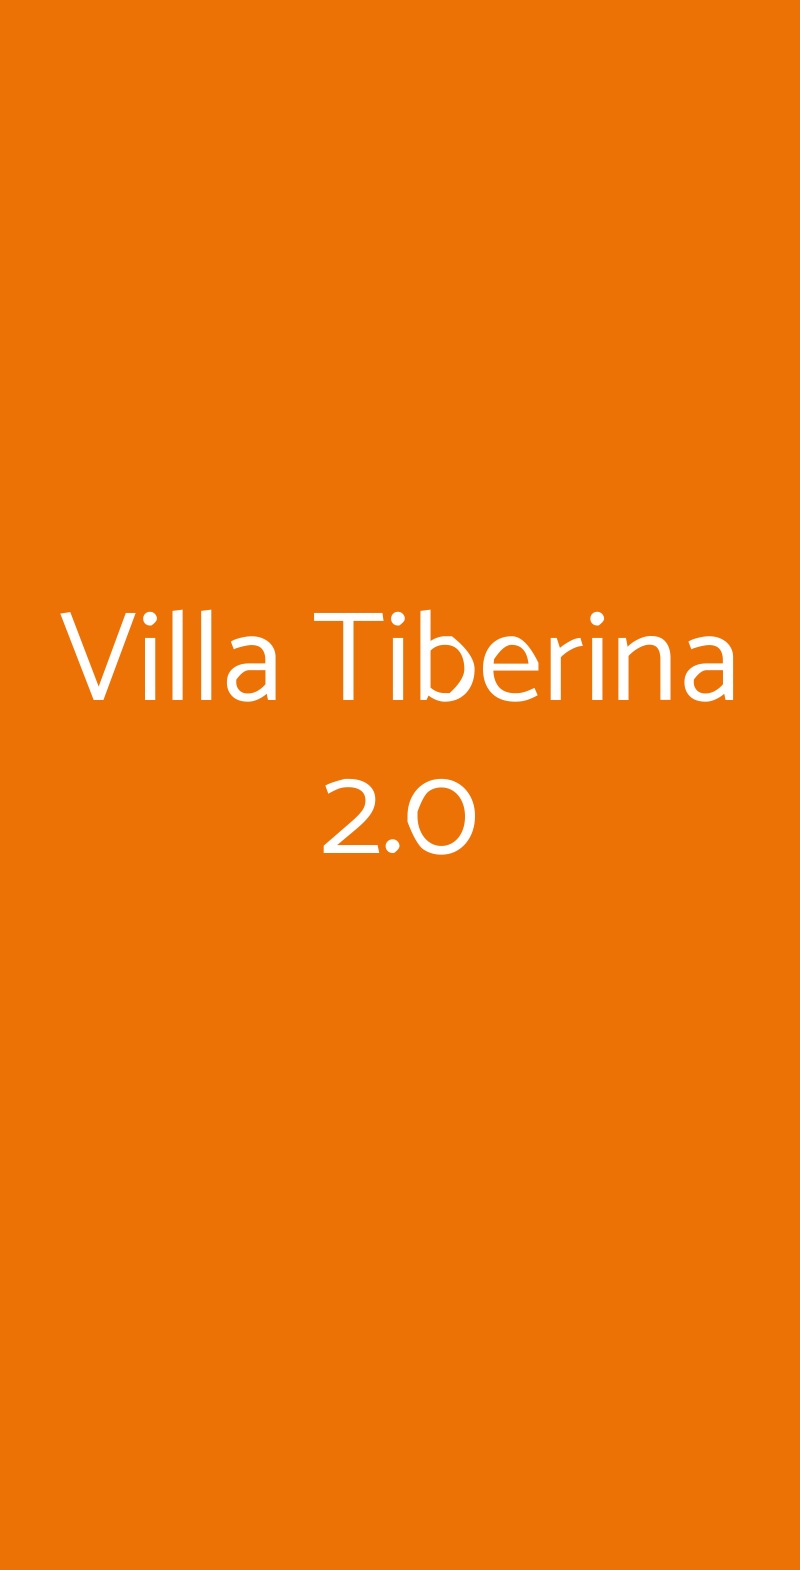 Villa Tiberina 2.0 San Benedetto Del Tronto menù 1 pagina